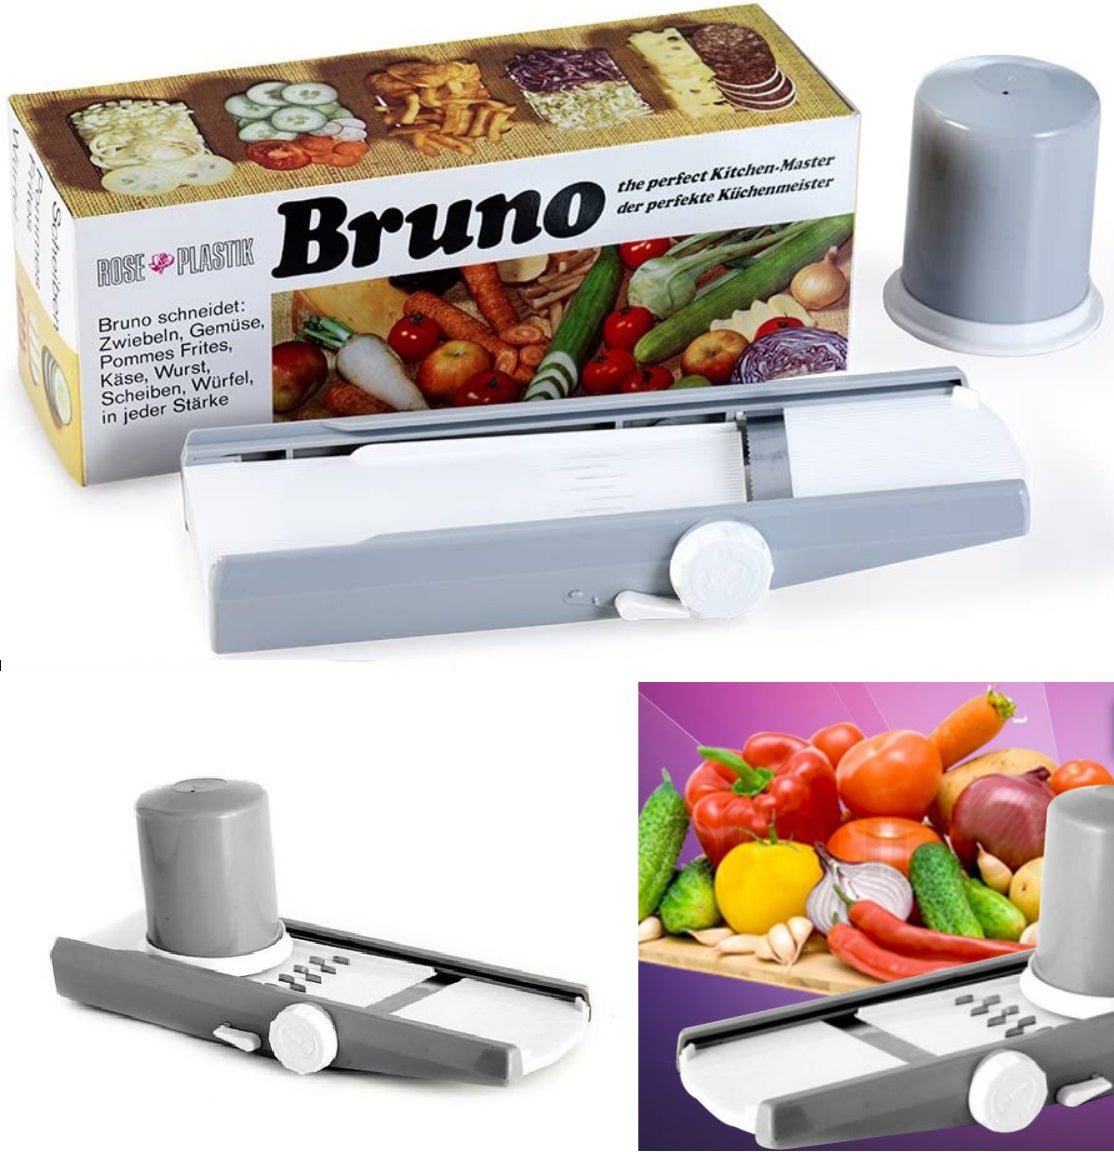 Multi Functional Vegetable Cutter/Slicer Box